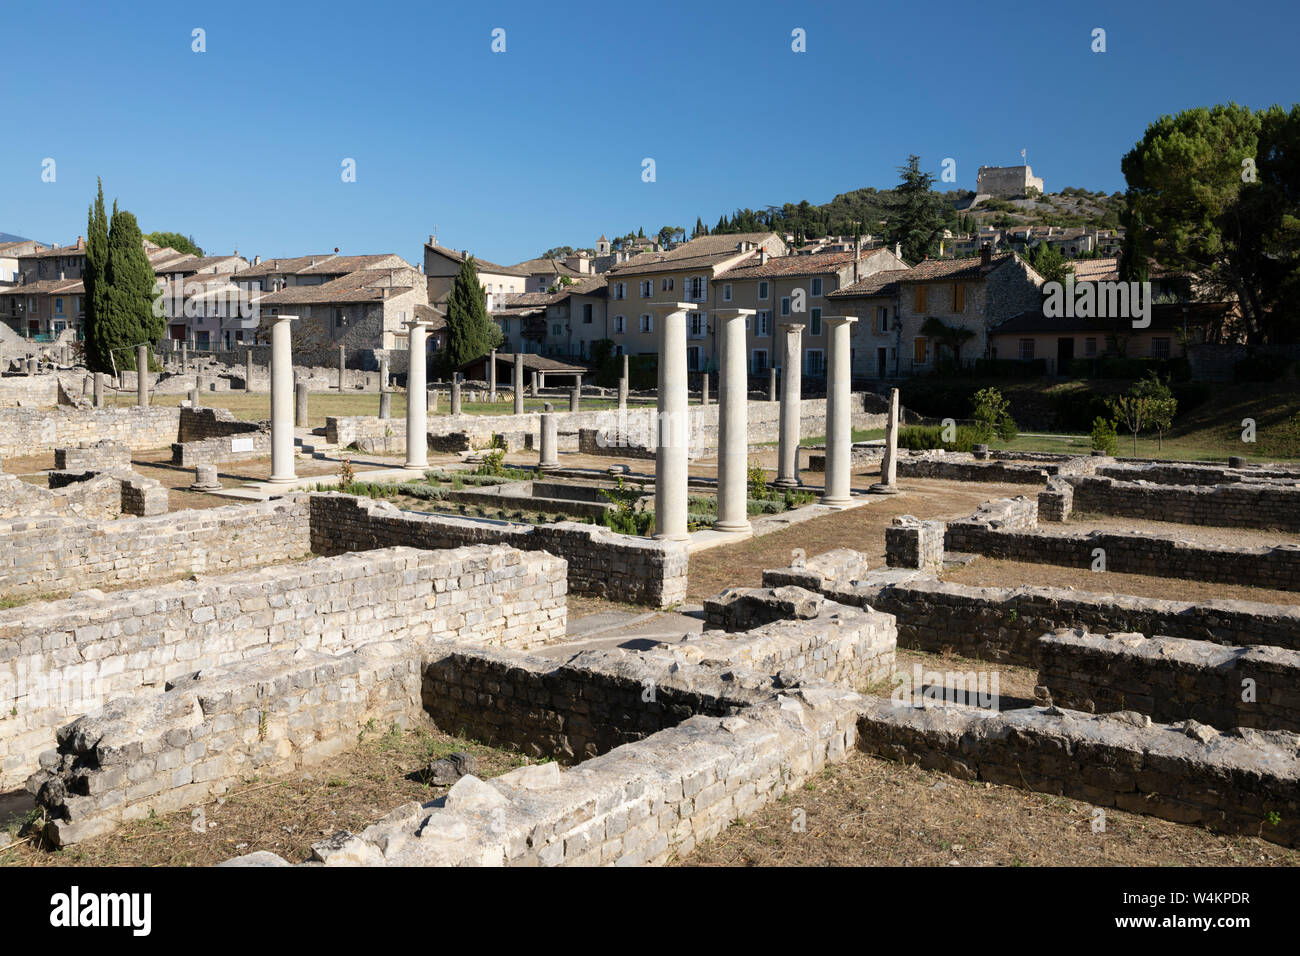 The Roman ruins, Vaison-la-Romaine, Vaucluse department, Provence-Alpes-Côte d'Azur, France, Europe Stock Photo